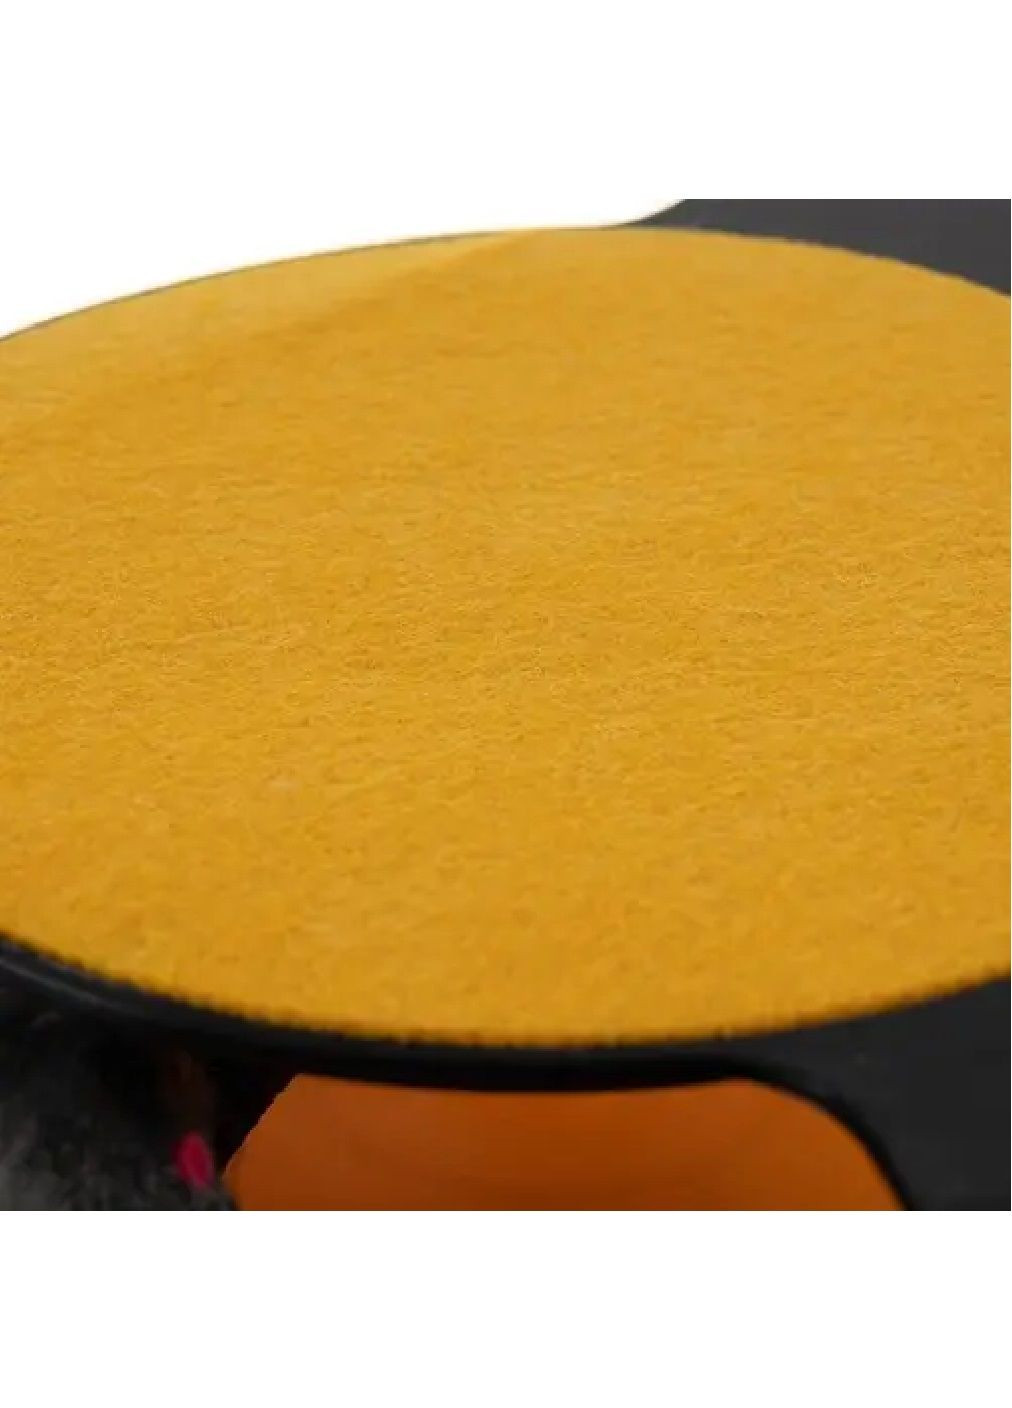 Іграшка інтерактивна колесо з мишкою килимком кігтеточкою нековзними ніжками для кішок котів 25х6,5 см (476850-Prob) Unbranded (291984583)